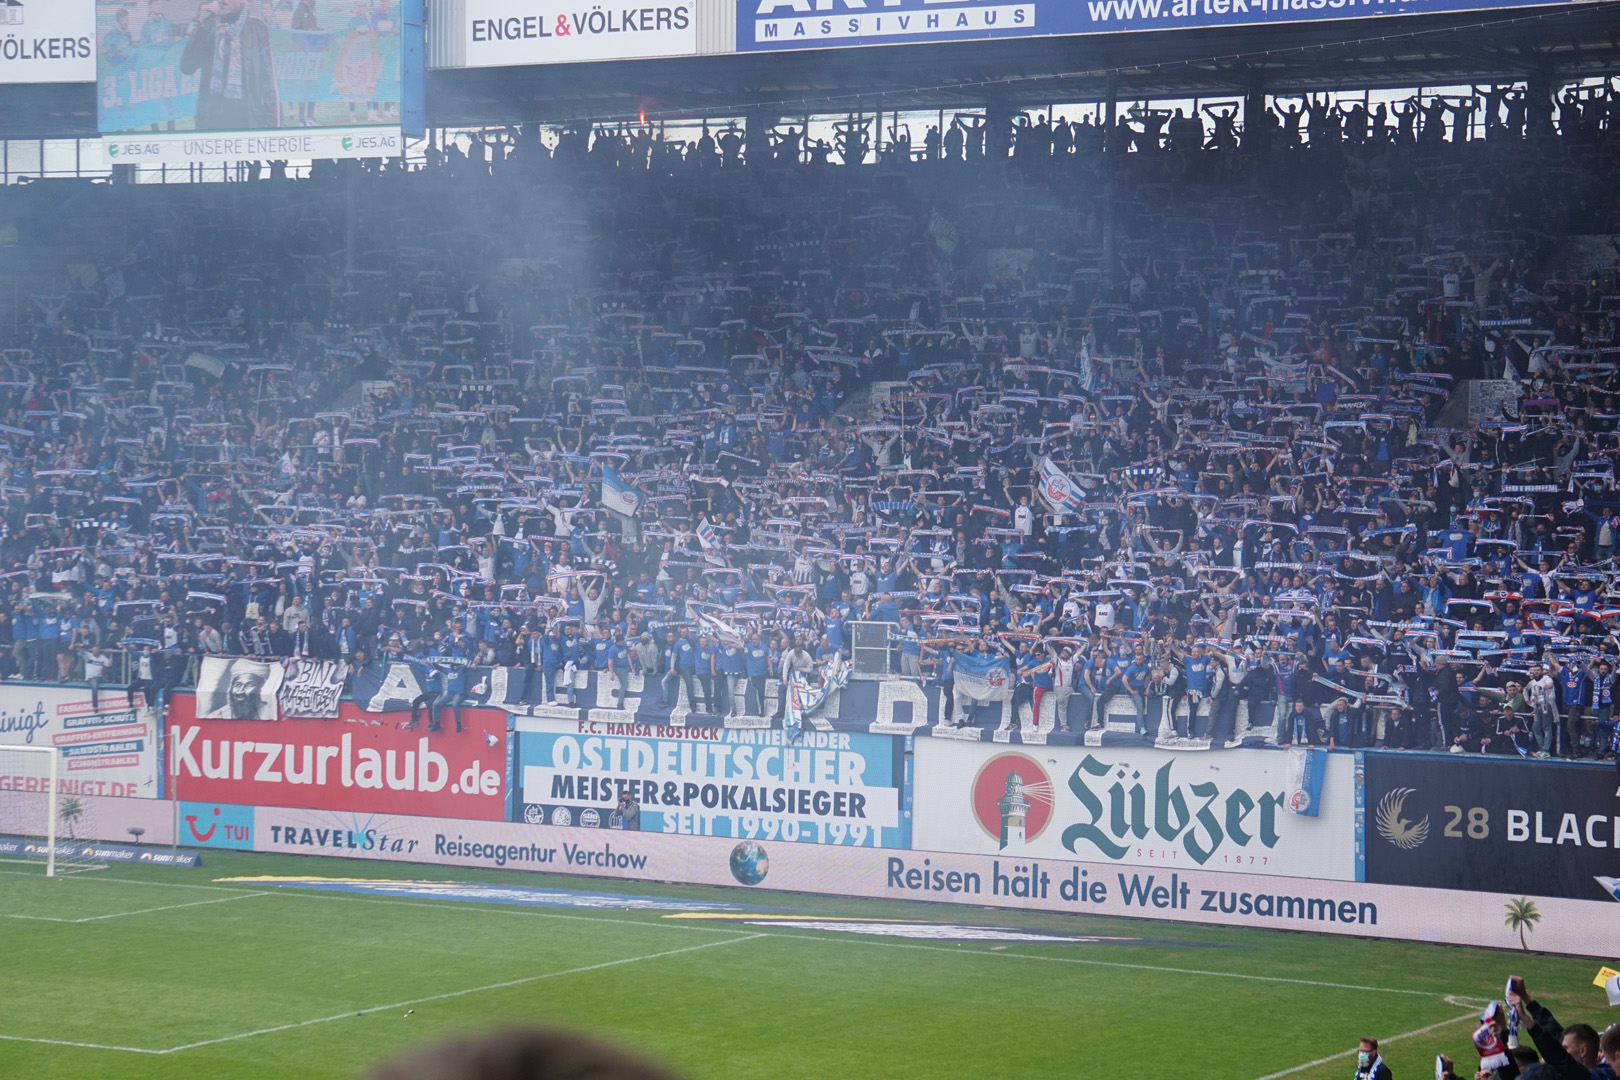 Jetzt reicht’s: F.C. Hansa Rostock stellt Strafanträge und leitet Stadionverbote gegen eigene Fans ein › HL-SPORTS